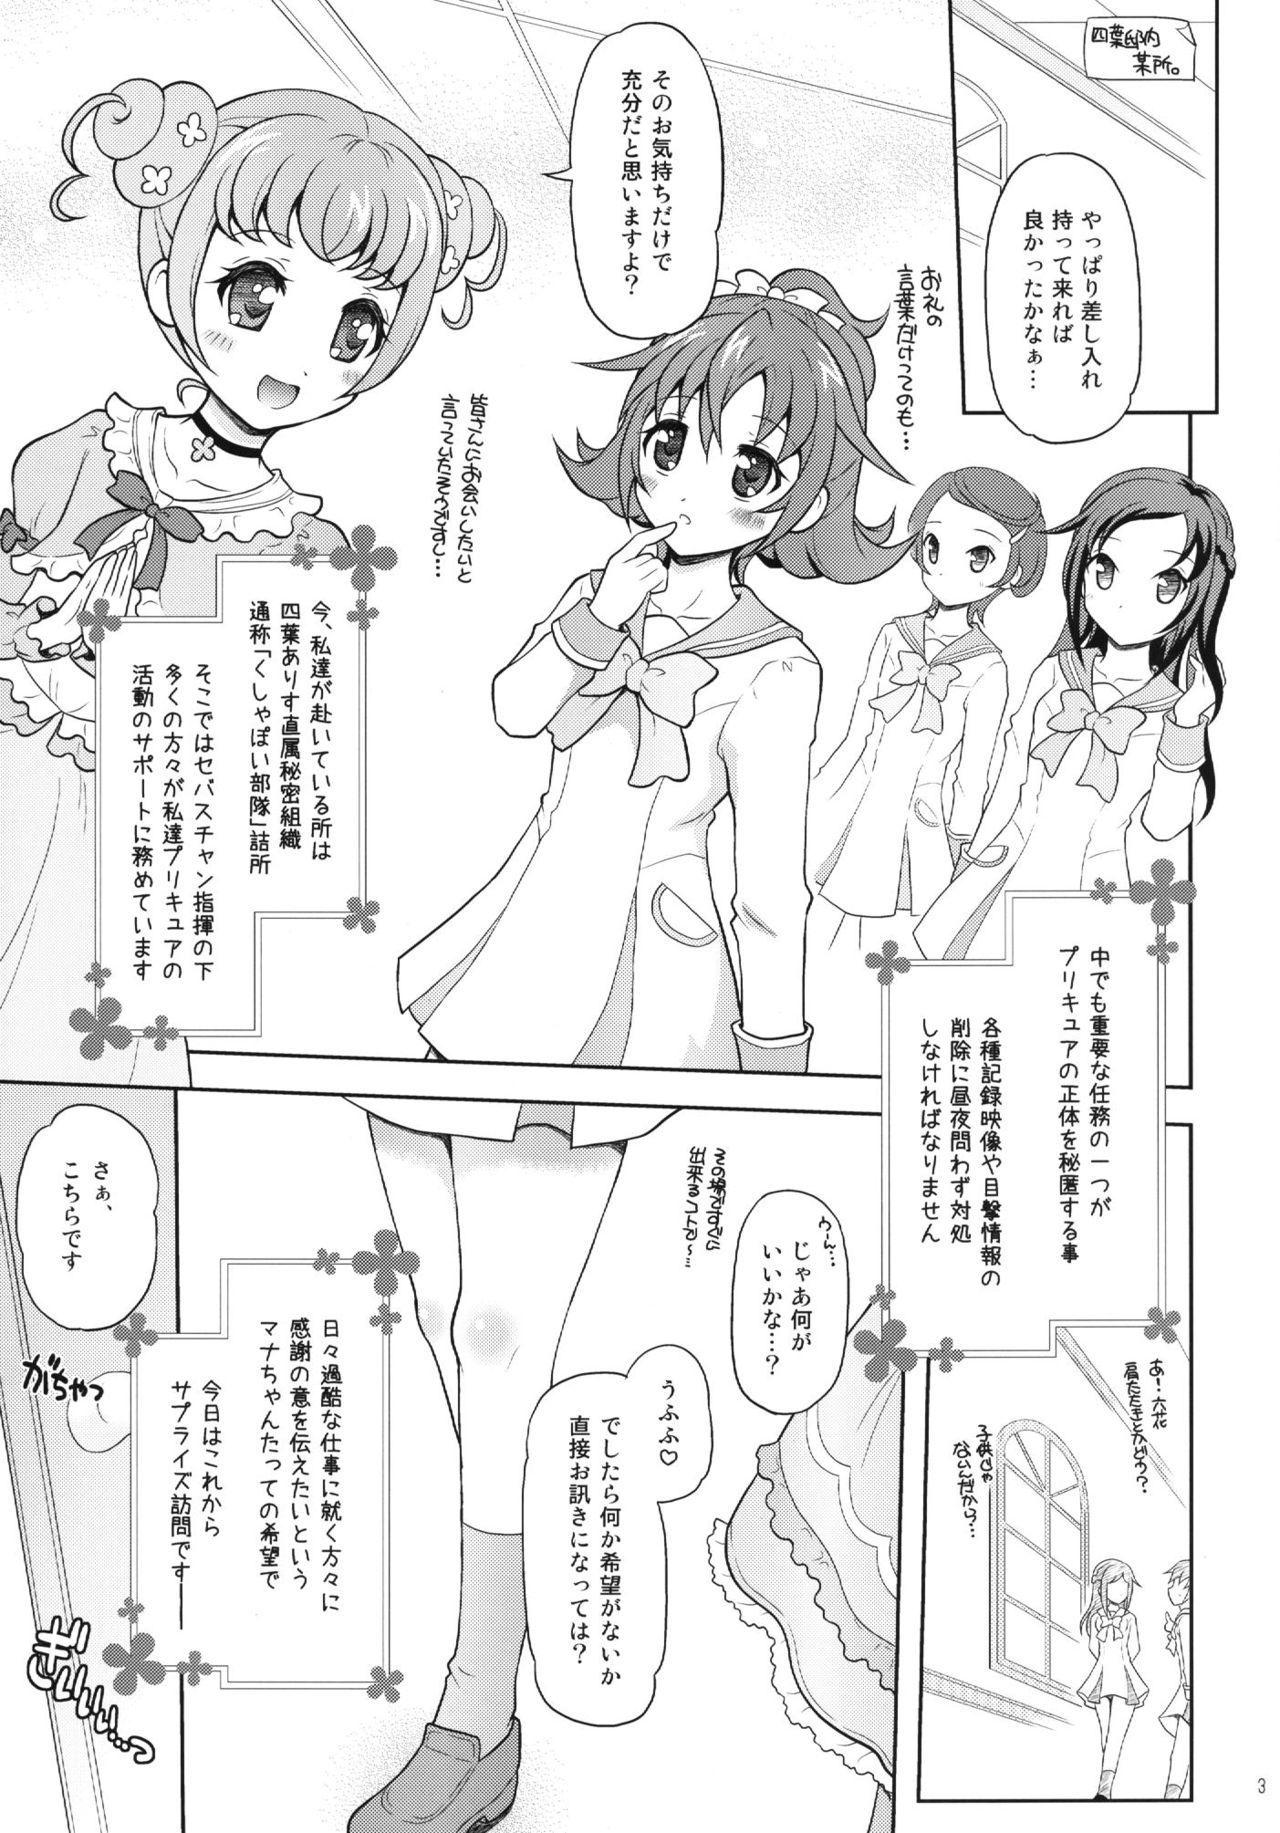 Doctor DokiDoki! Surprise Party - Dokidoki precure Pauzudo - Page 3